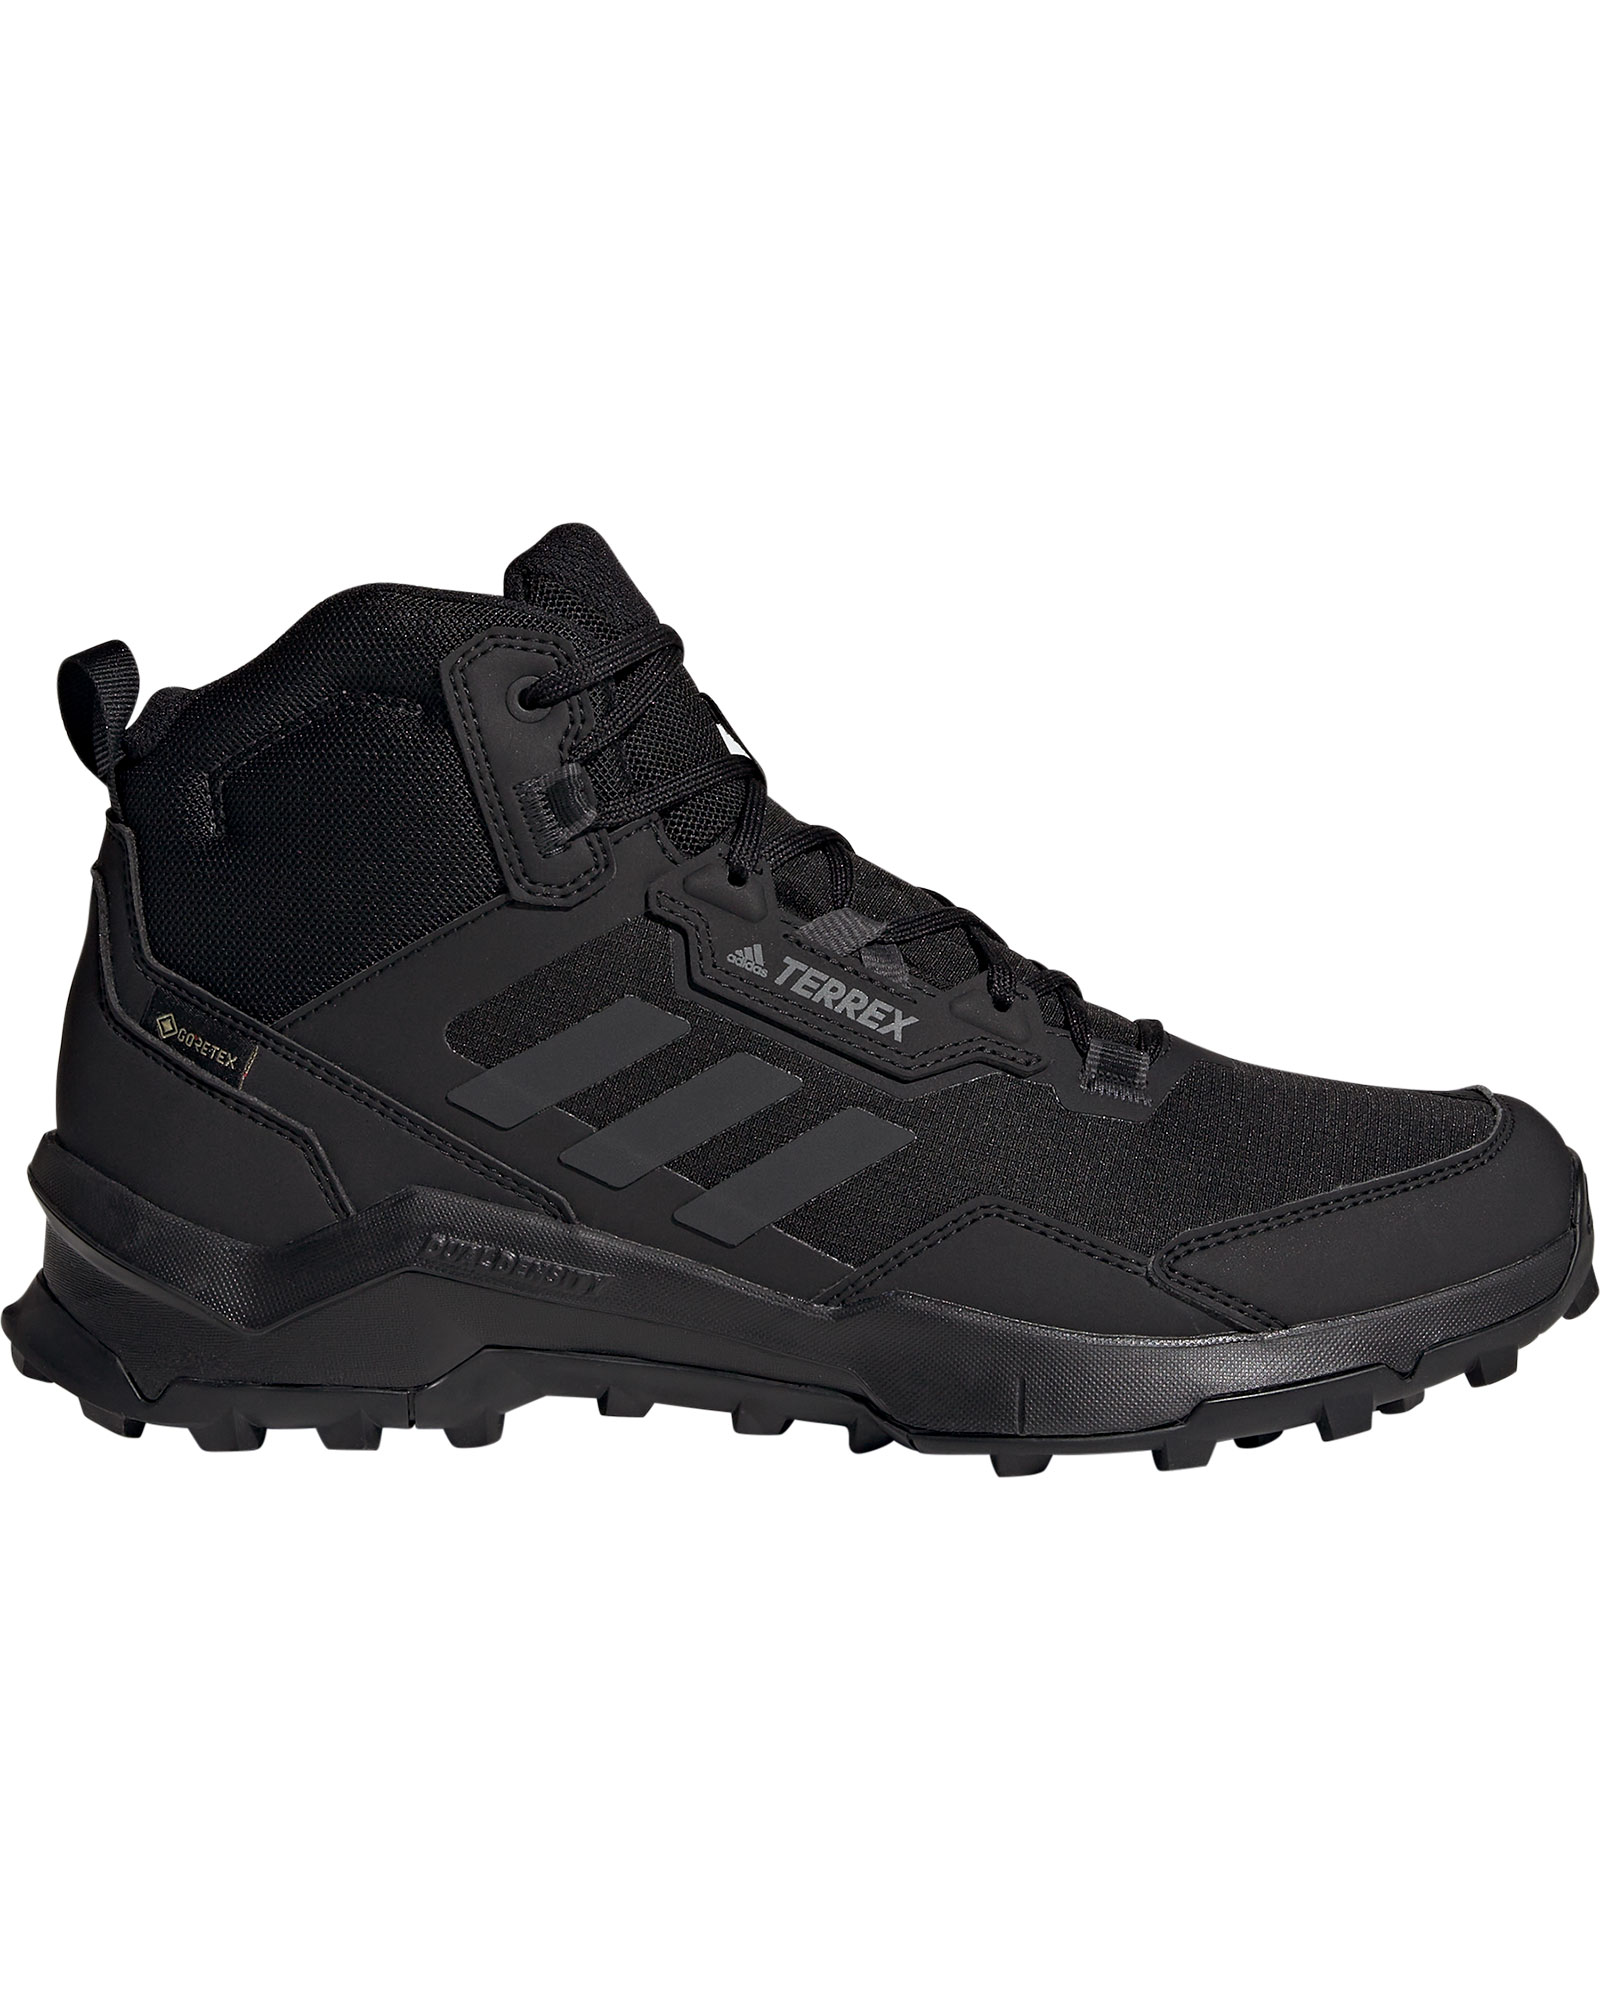 adidas TERREX AX4 Mid GORE TEX Men’s Boots - Core Black/Carbon/Grey Four UK 7